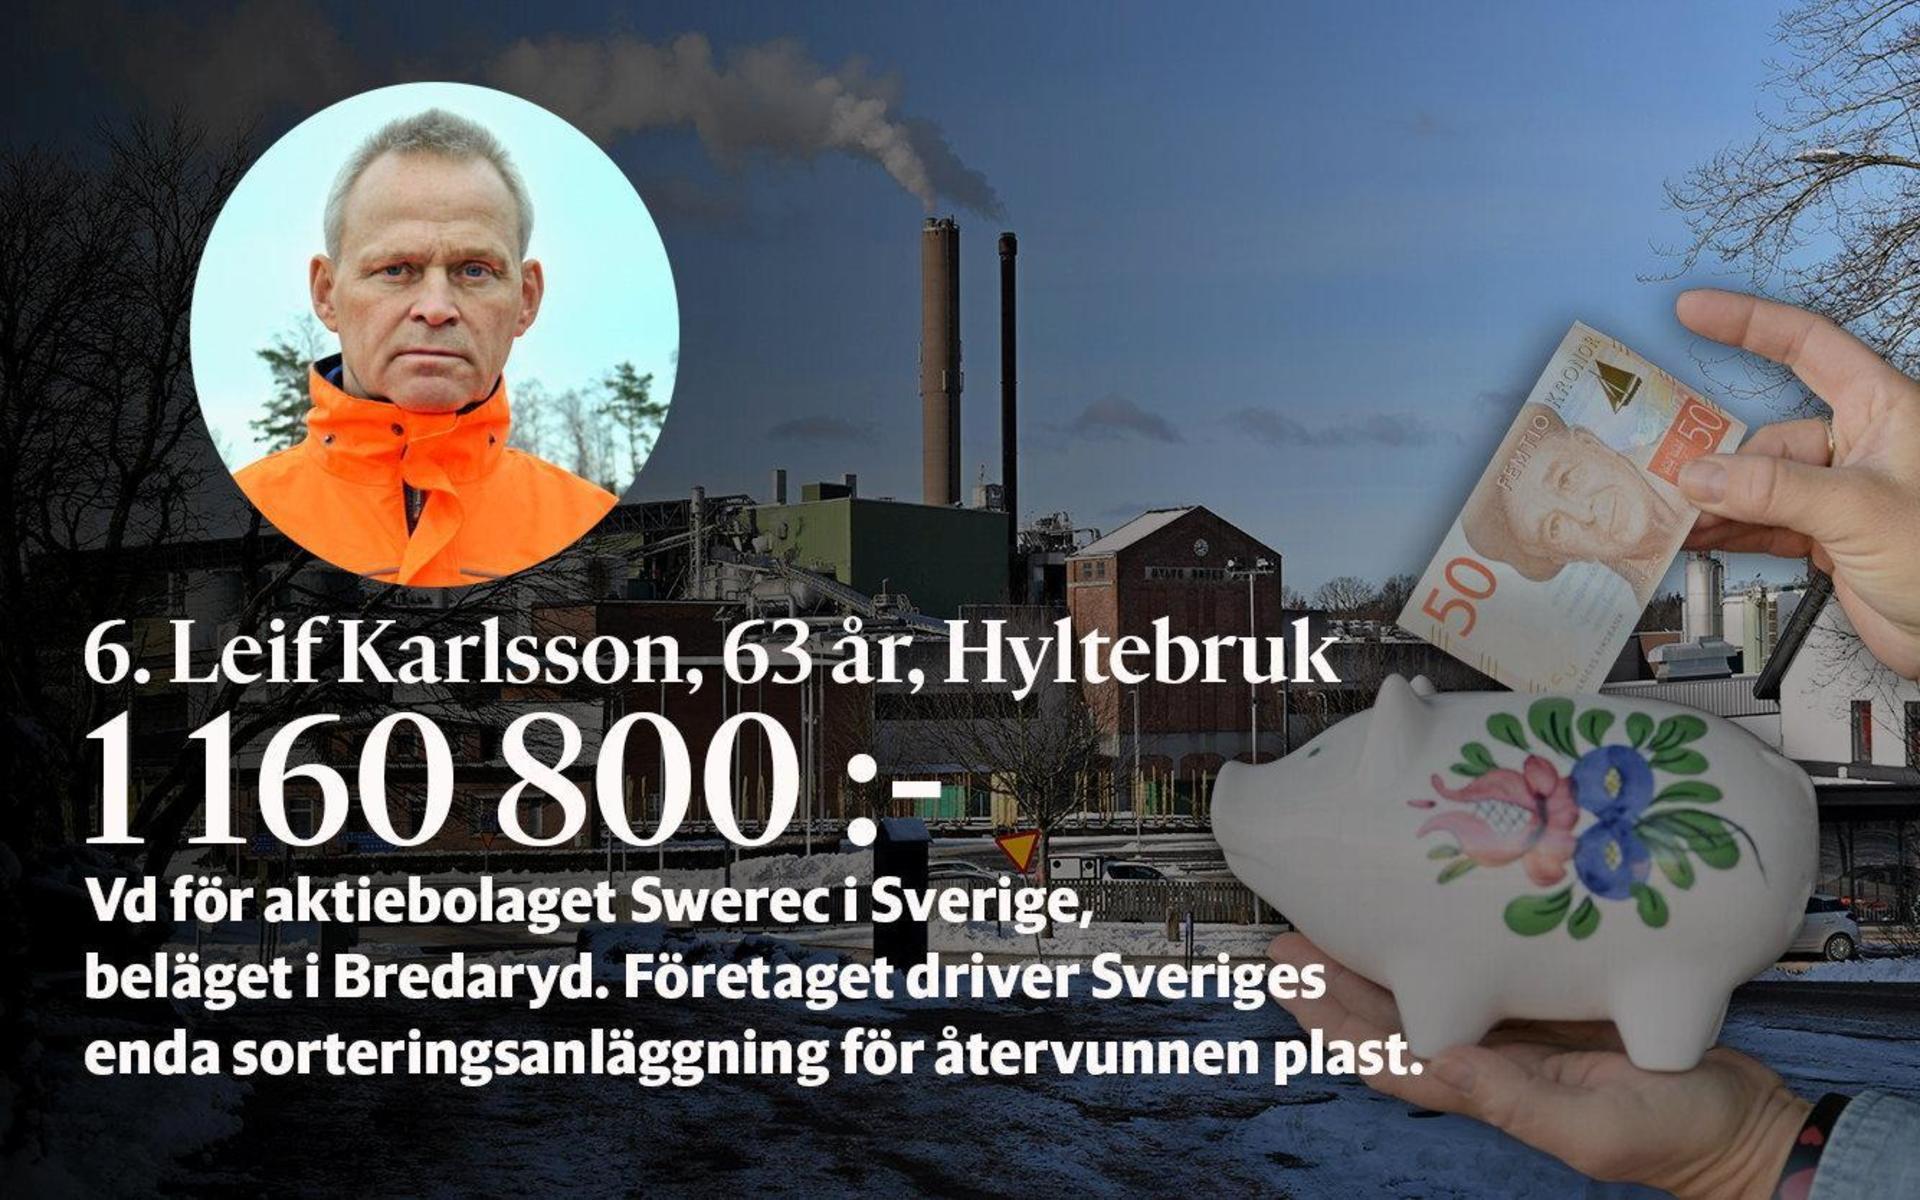 6. Leif Karlsson är vd för aktiebolaget Swerec i Sverige, beläget i Bredaryd. Företaget driver Sveriges enda sorteringsanläggning för återvunnen plast.